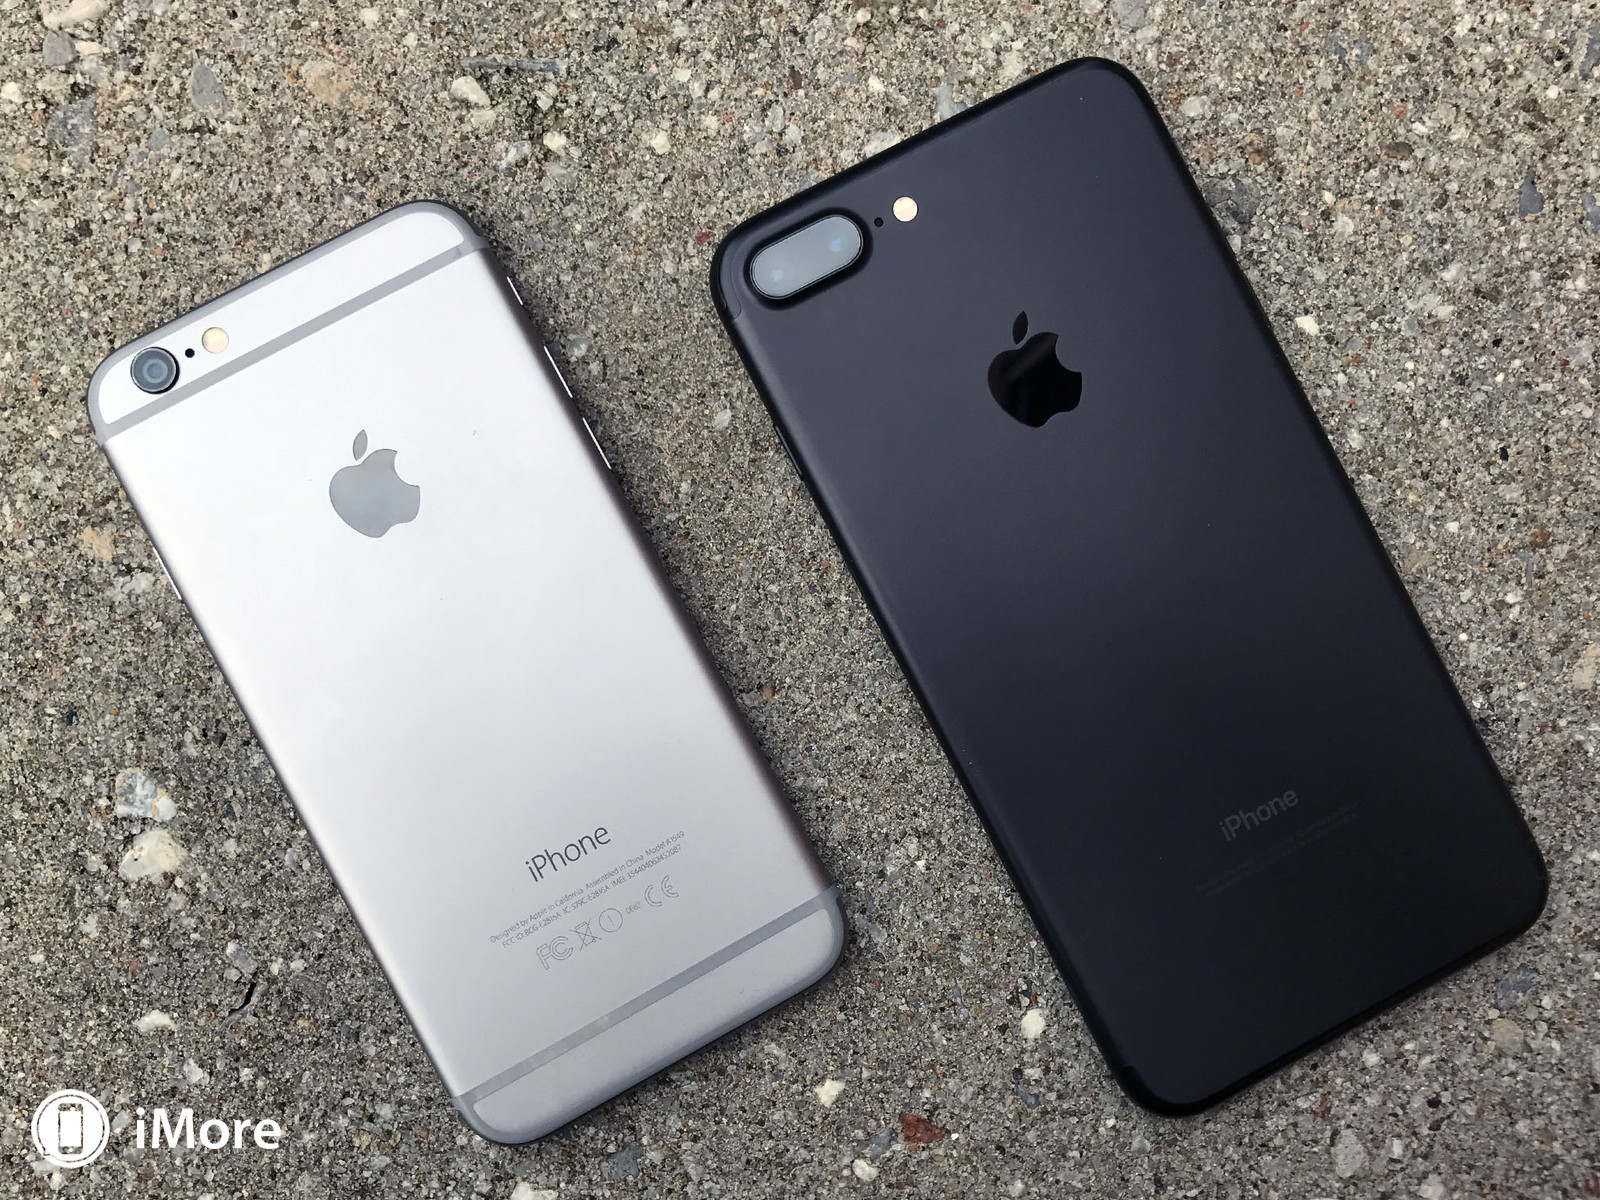 تجربة الأداء تؤكد أن iPhone 7 هو الأفضل في الأداء بين هواتف 2016 المميزة